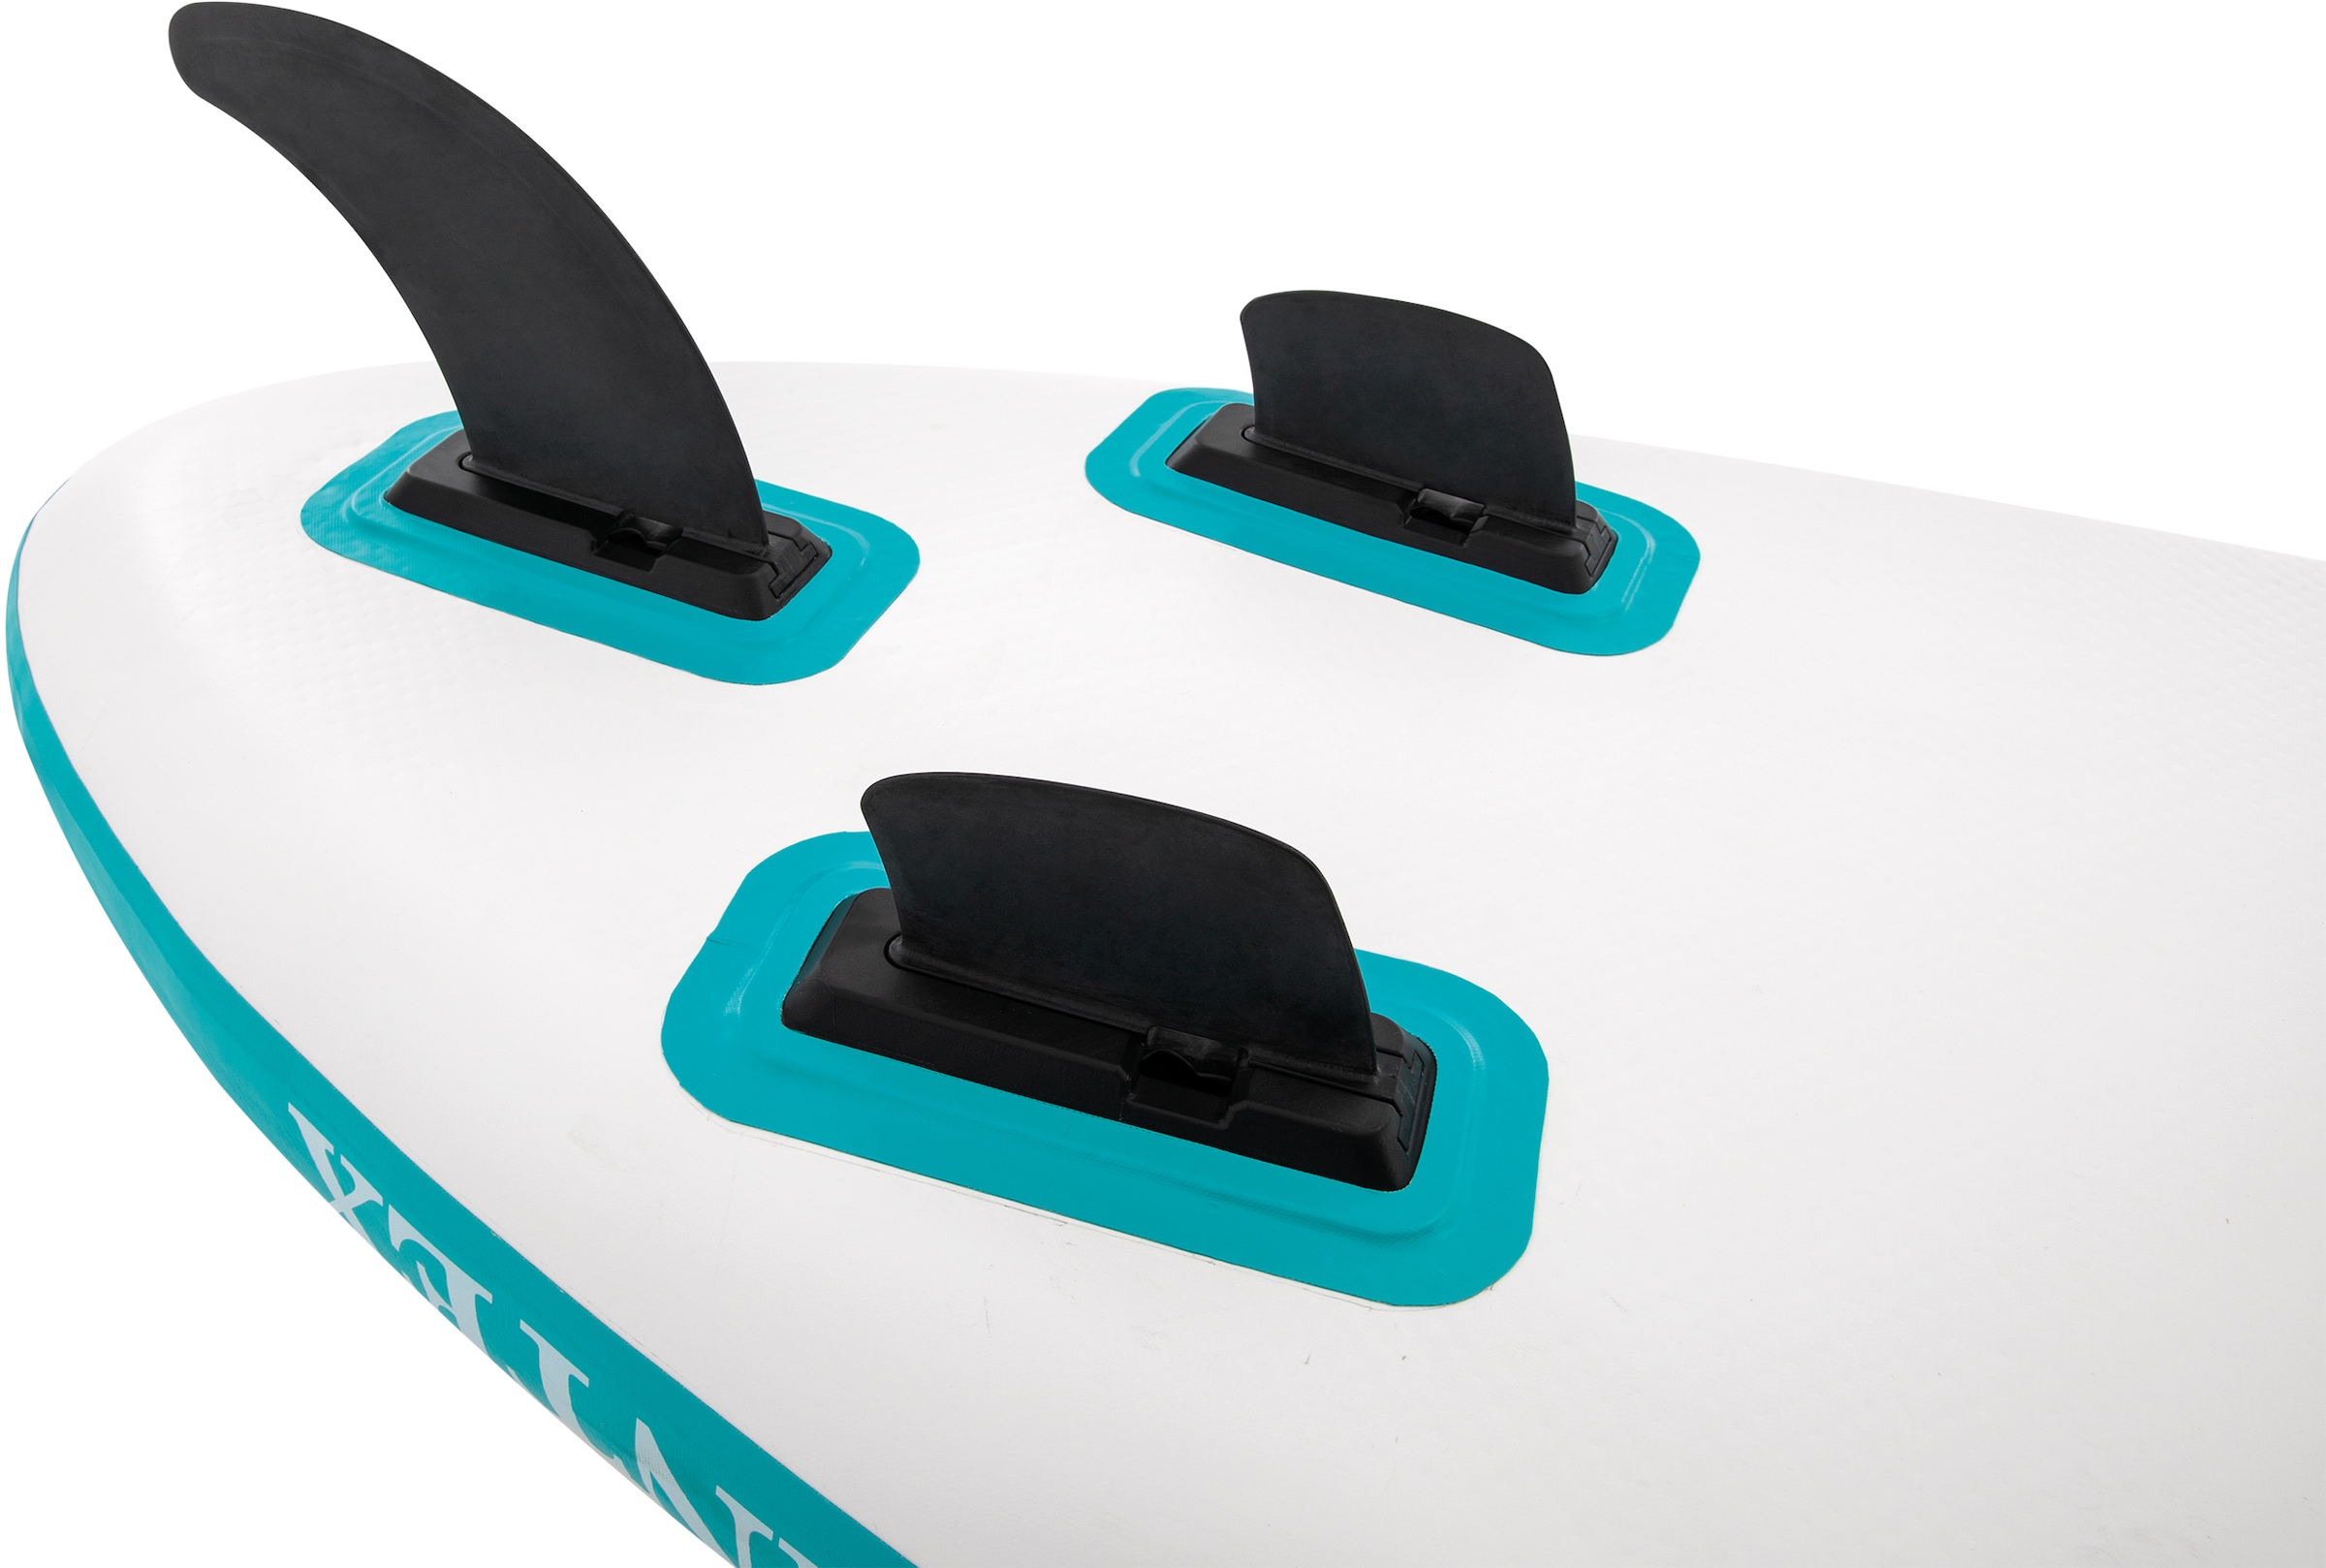 Intex Inflatable SUP-Board »AQUA QUEST 240«, (Set, 3 tlg., mit Paddel, Pumpe und Transportrucksack)